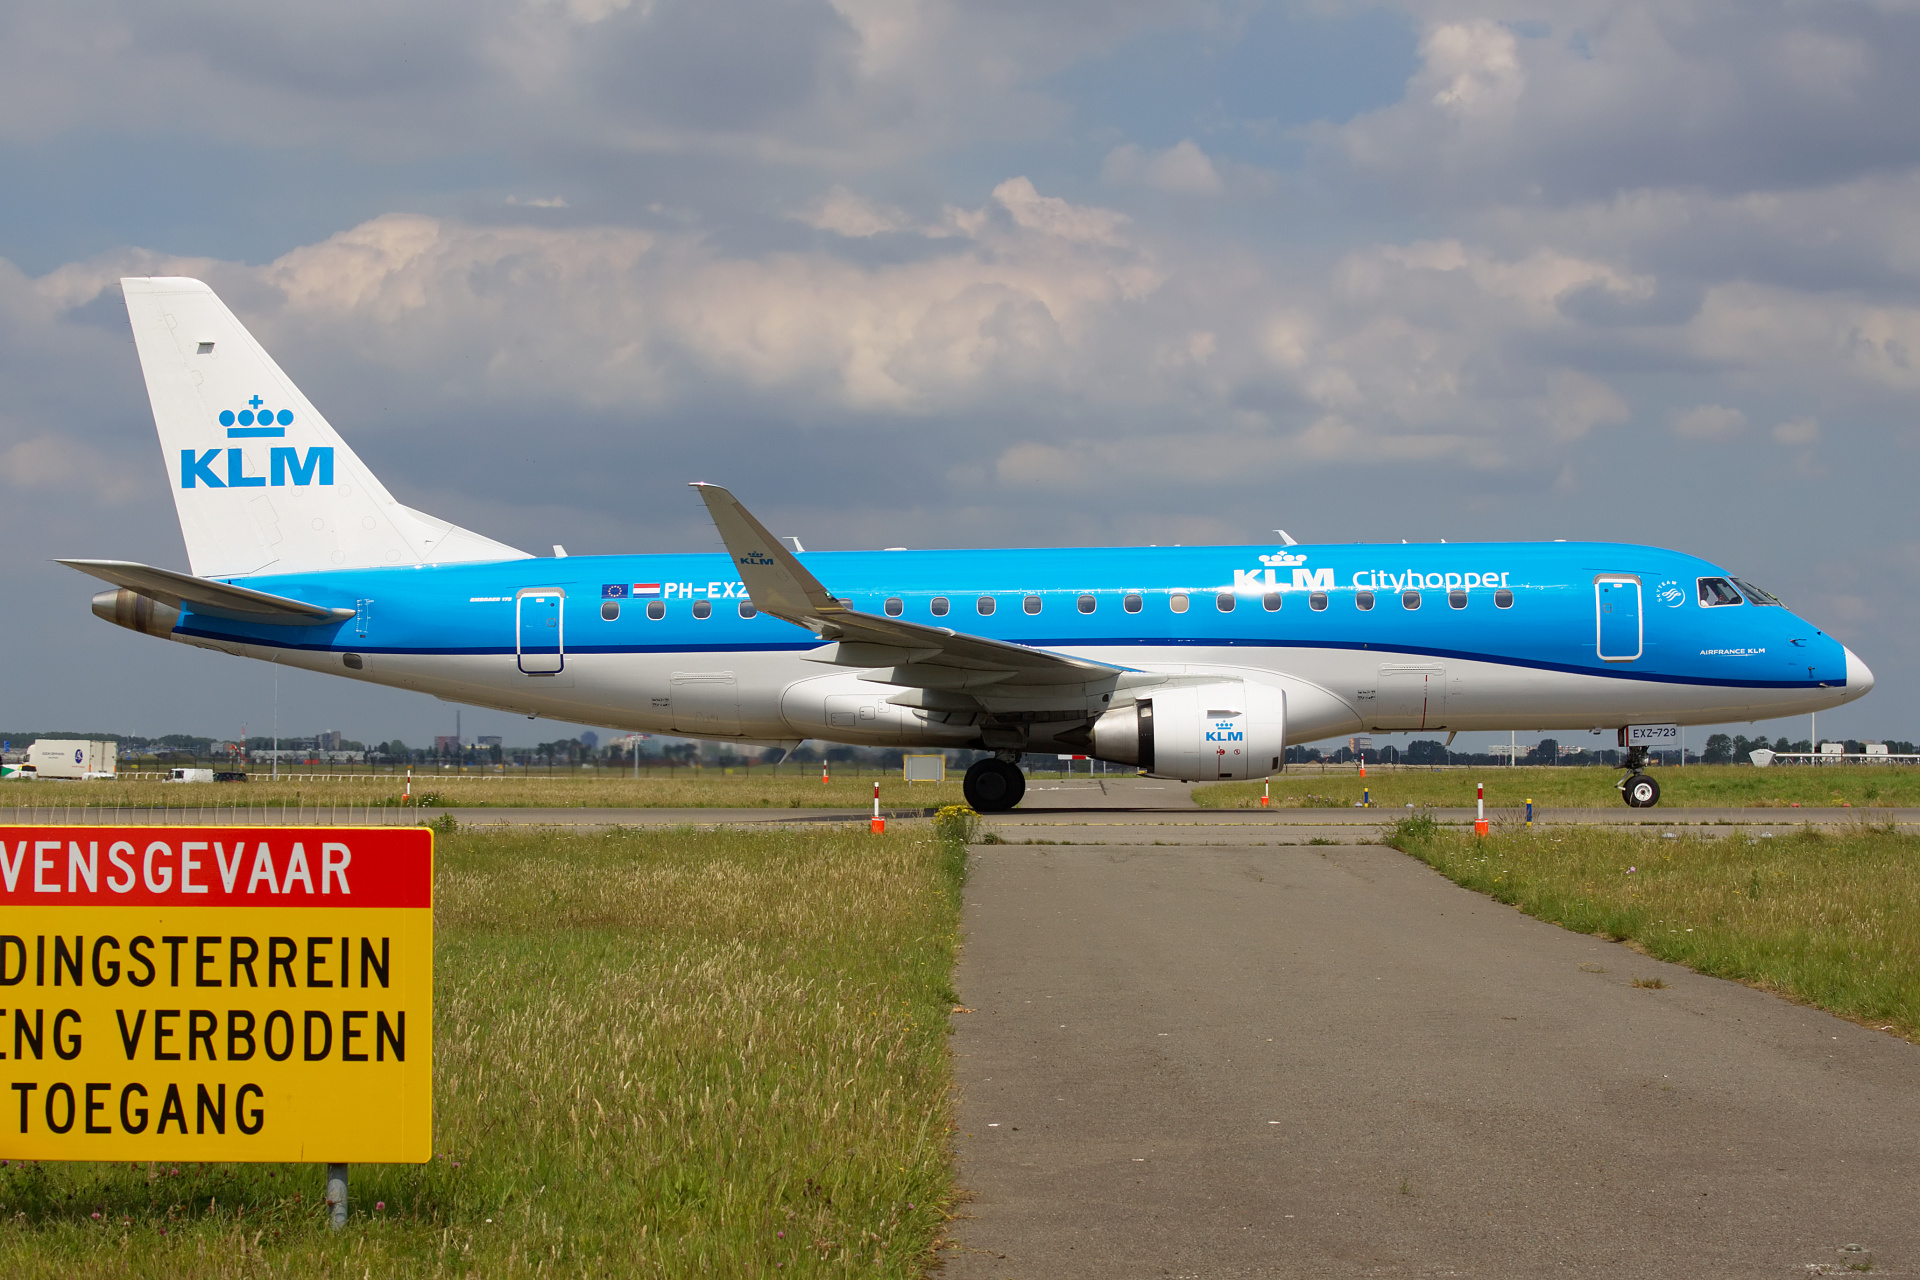 PH-EXZ (Aircraft » Schiphol Spotting » Embraer E175 » KLM Cityhopper)